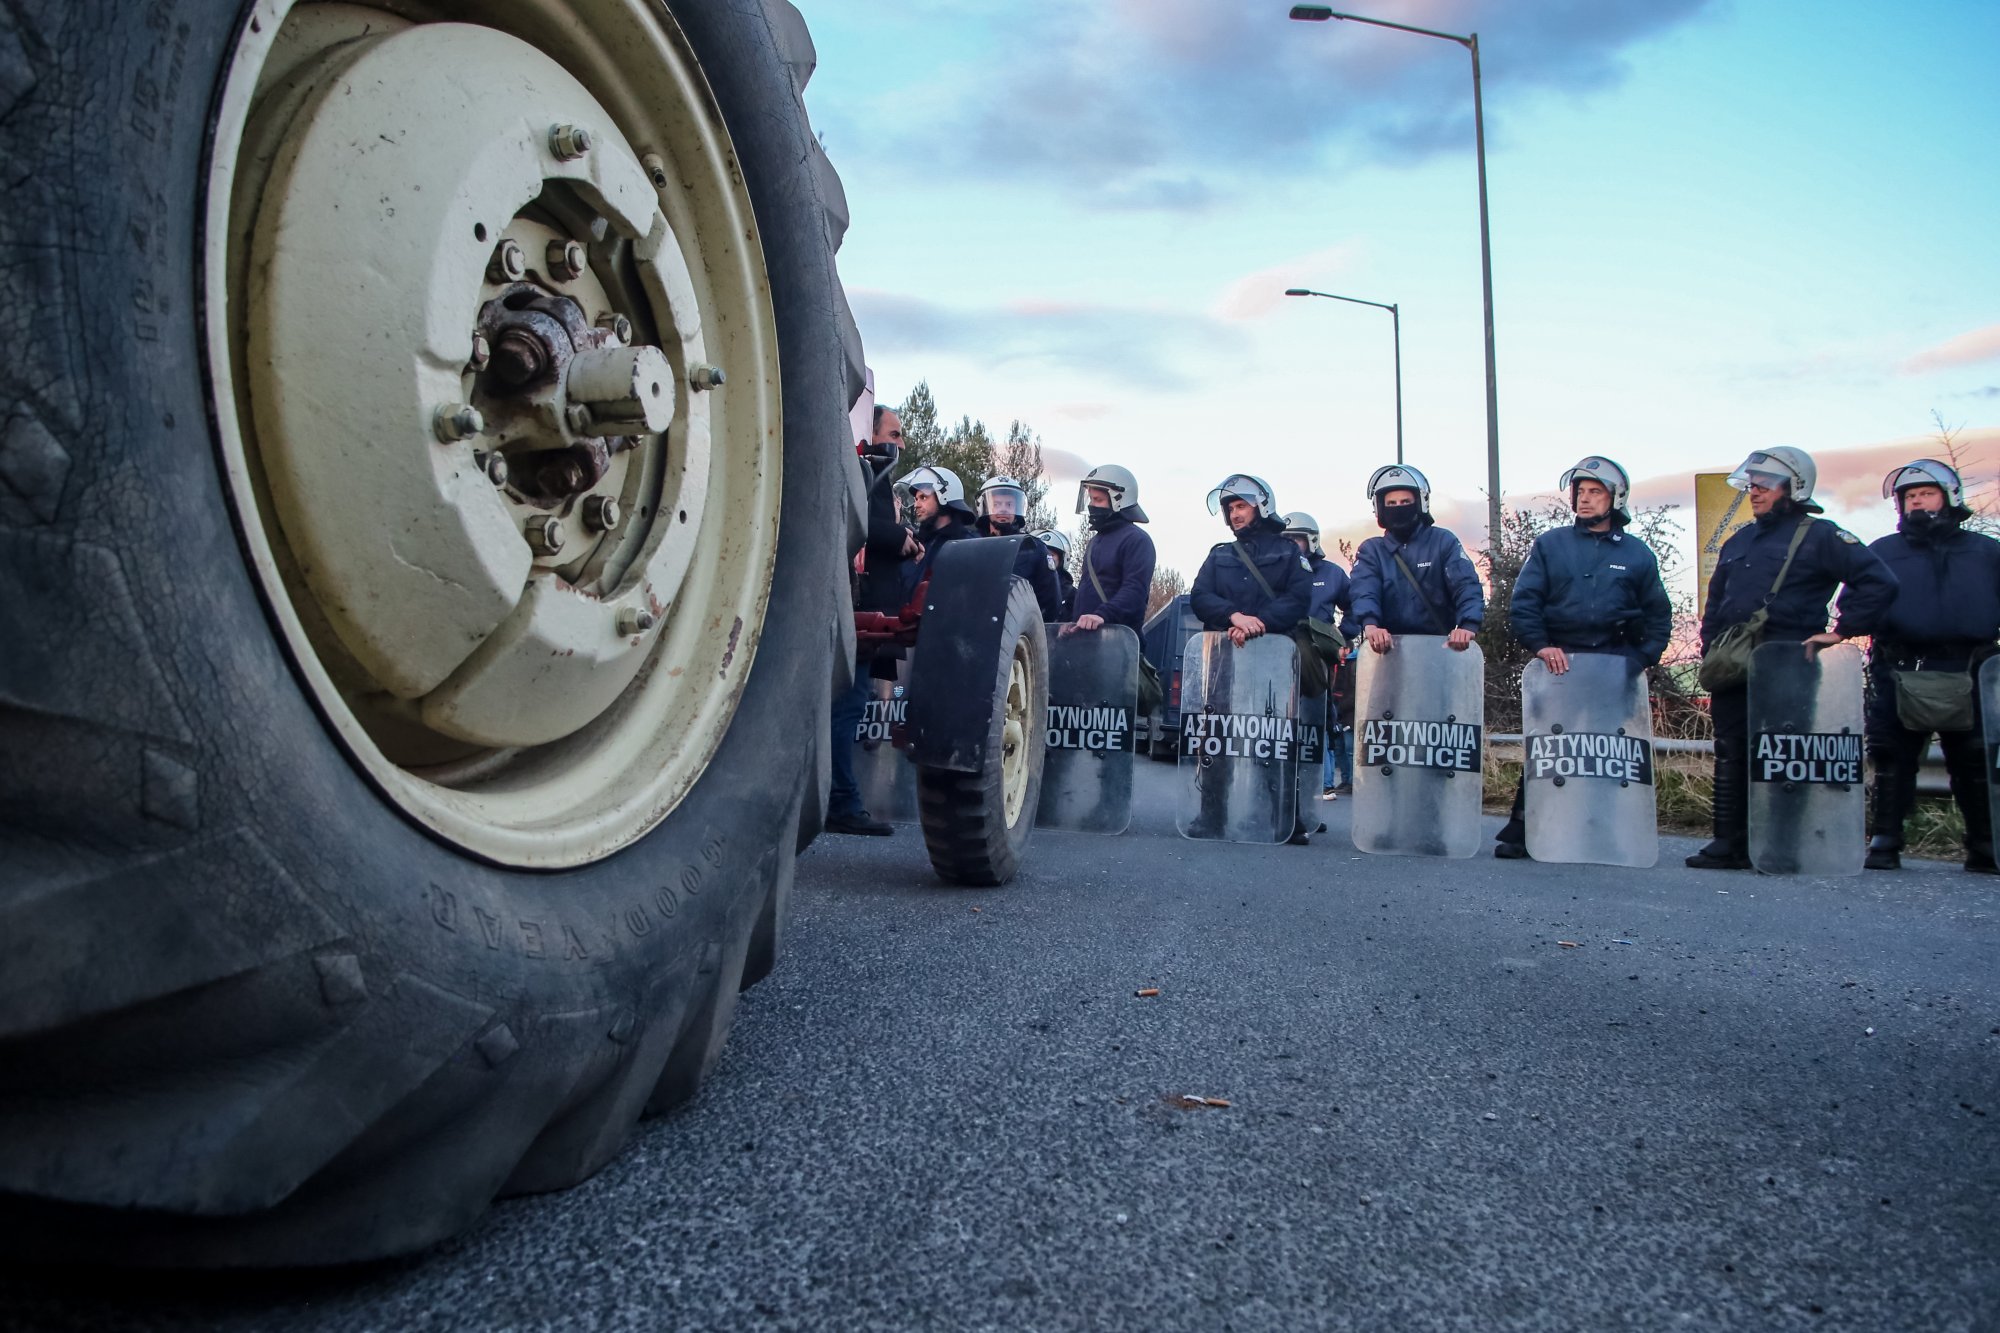 Τα σημεία υποδοχής των αγροτών στην Αθήνα - Προσυγκεντρώσεις από εργατικά συνδικάτα και μαζικούς φορείς